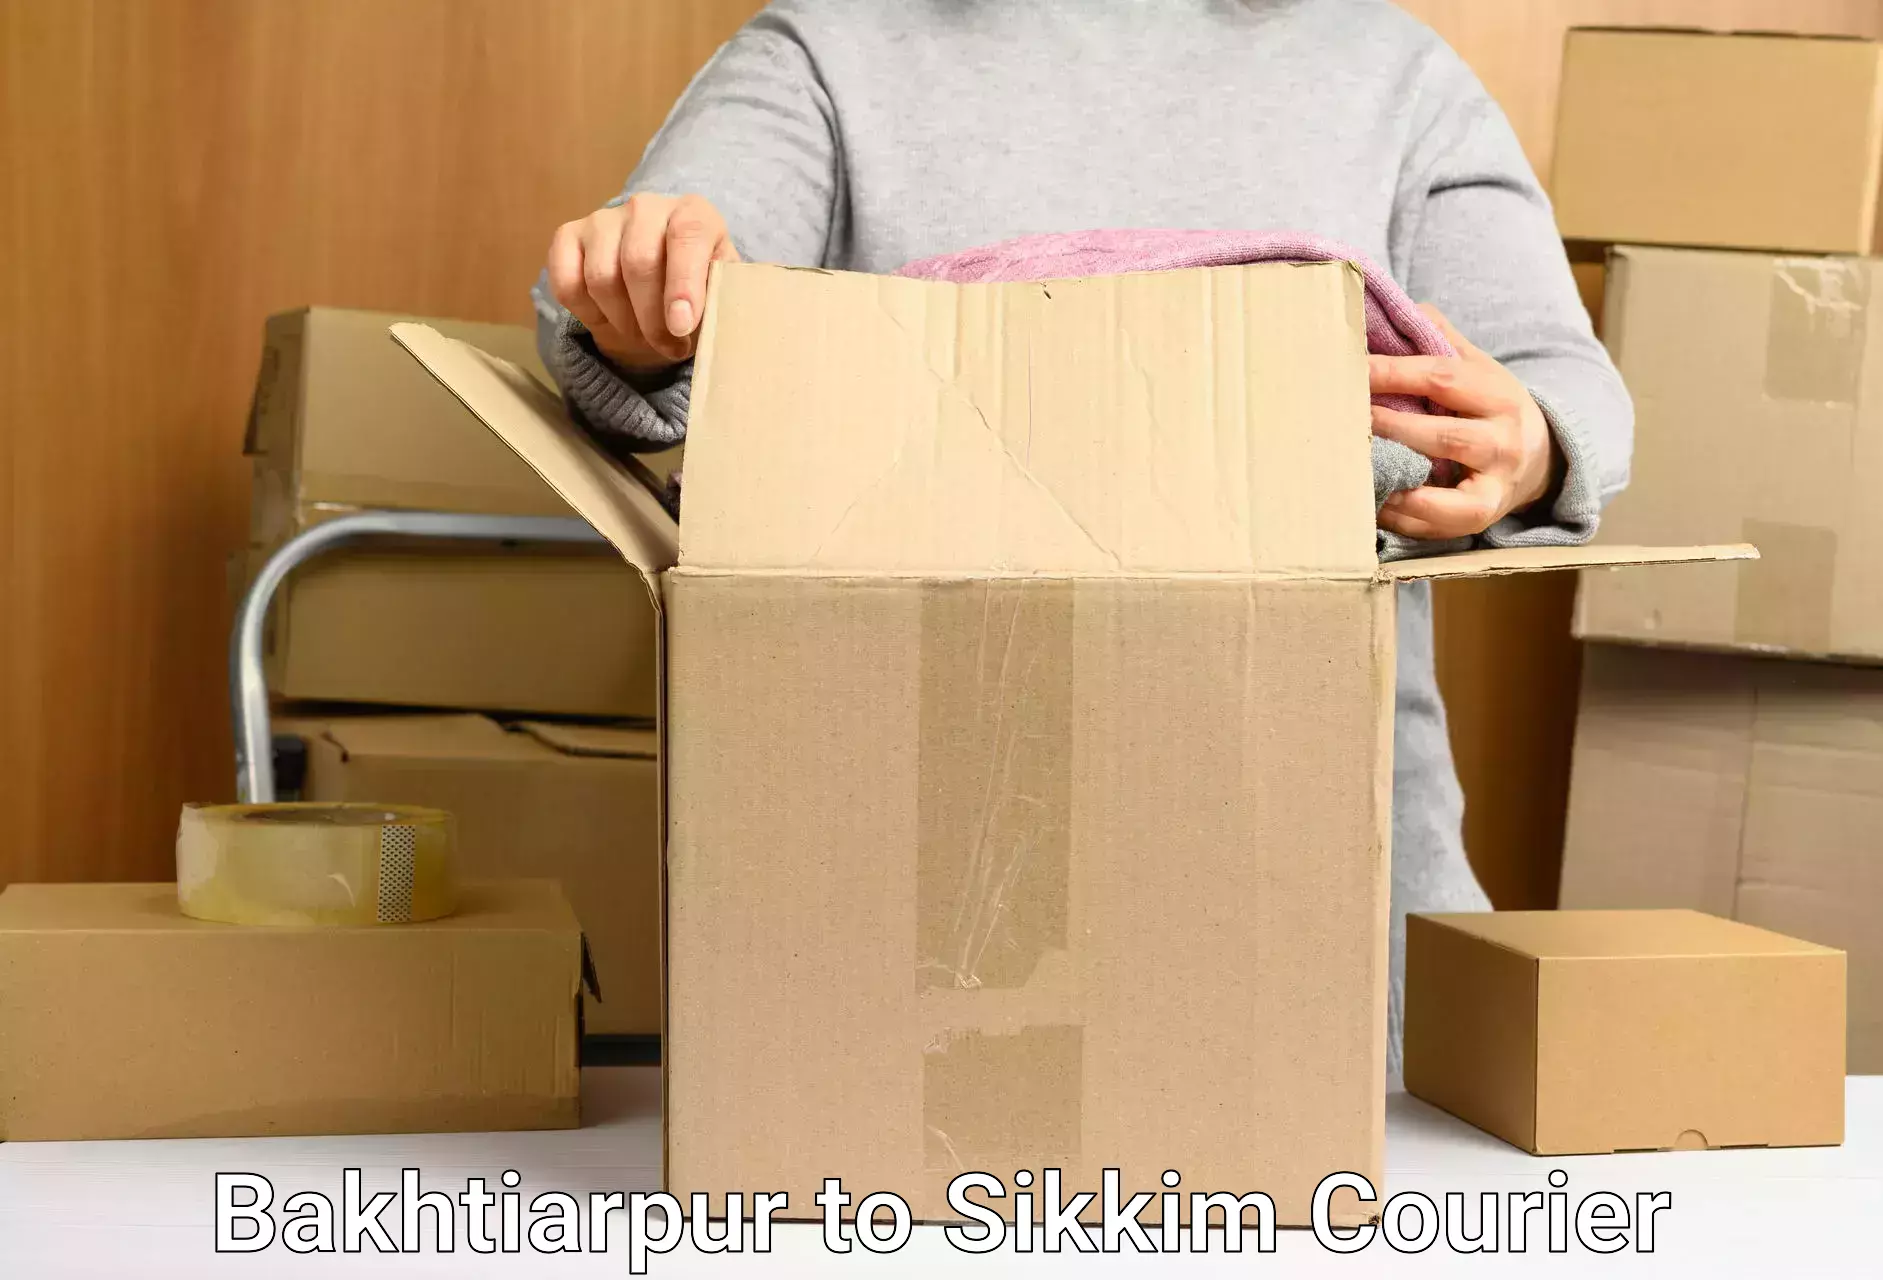 Professional parcel services Bakhtiarpur to Gangtok